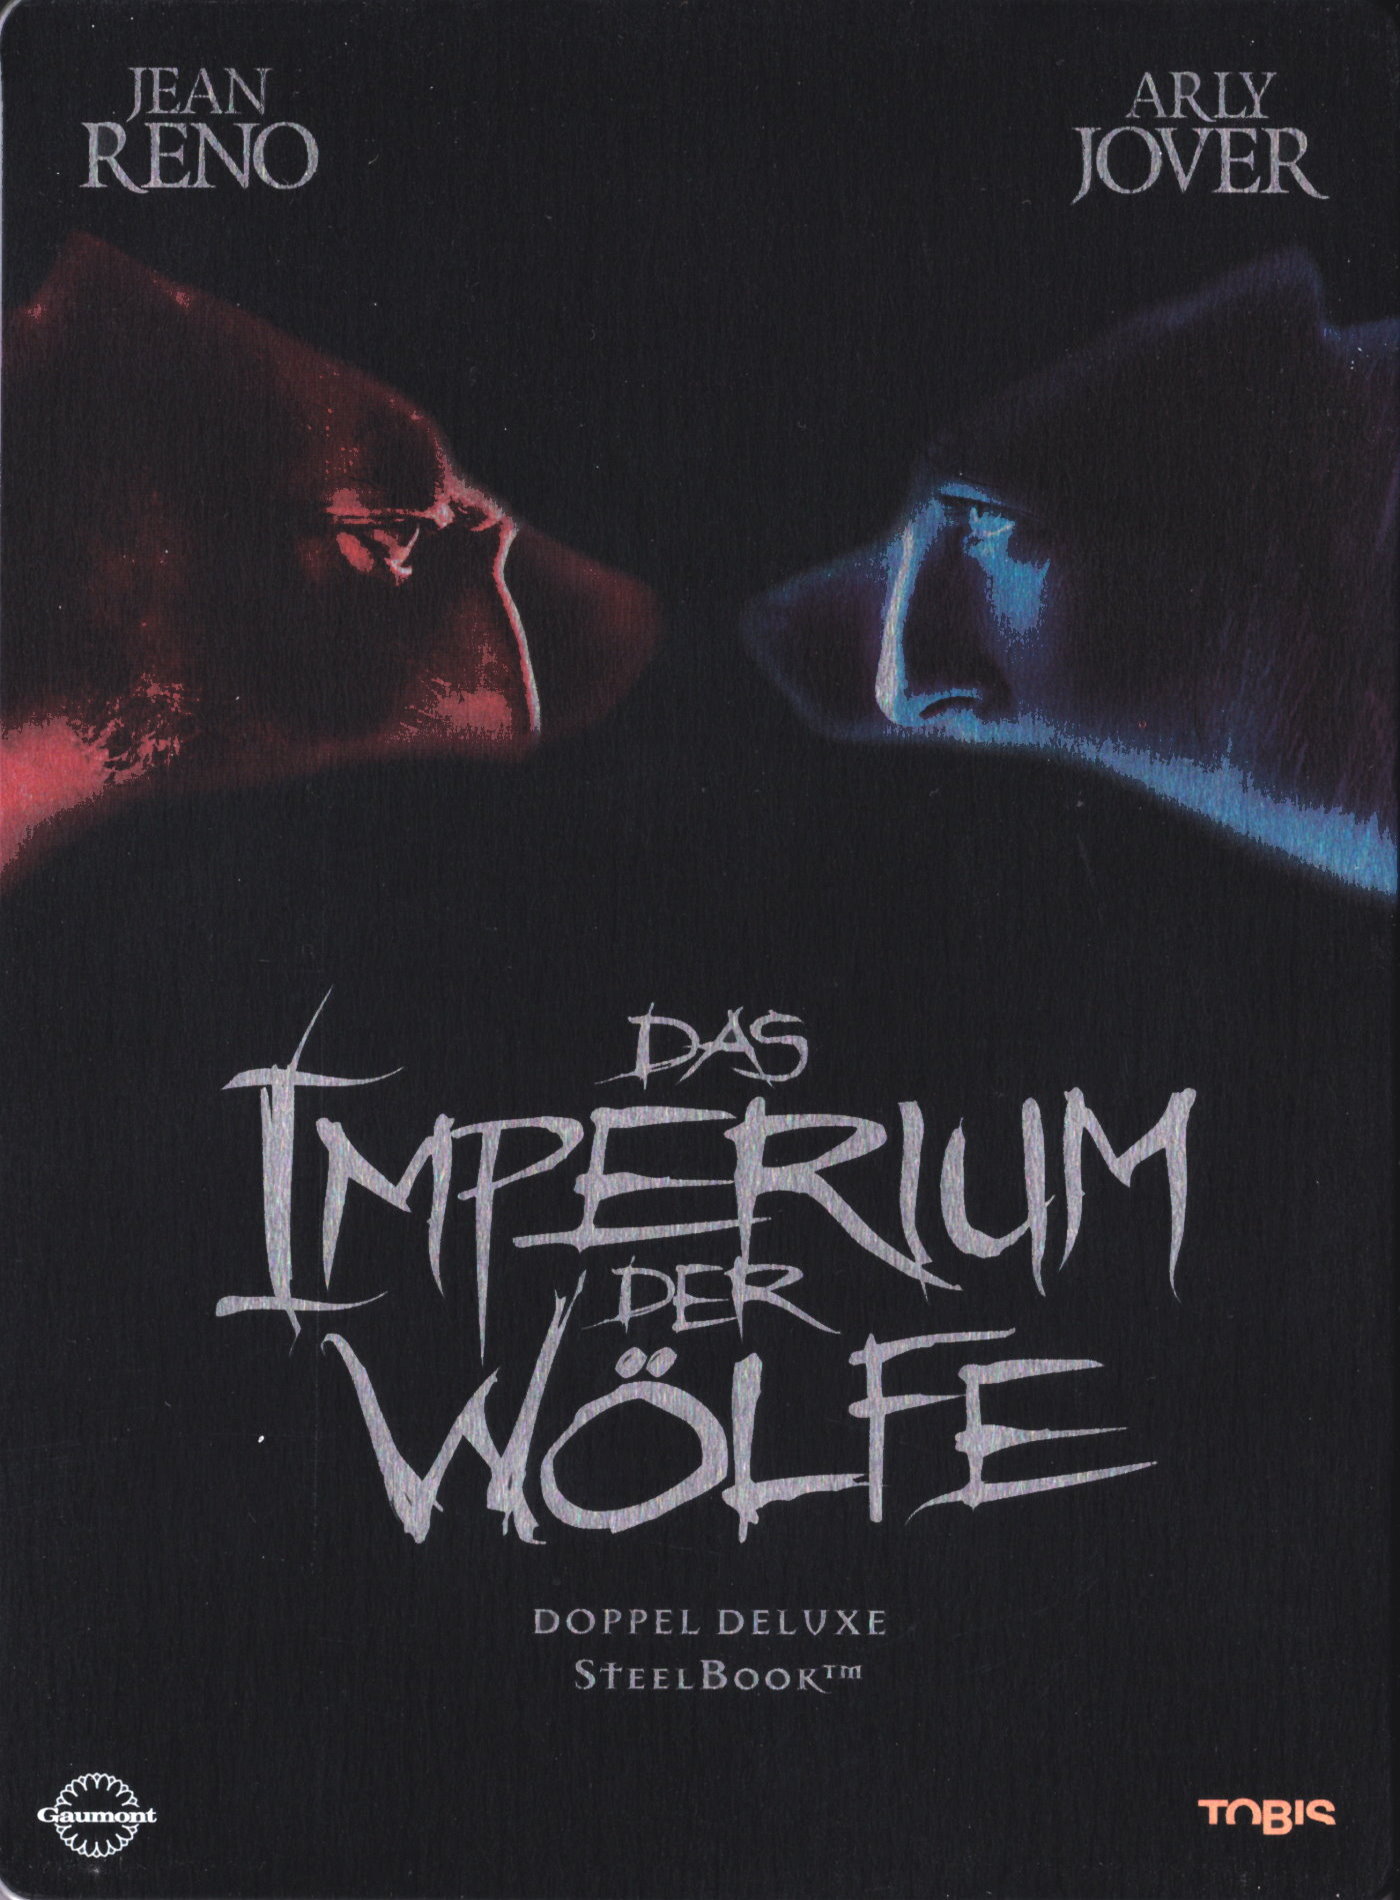 Cover - Das Imperium der Wölfe.jpg